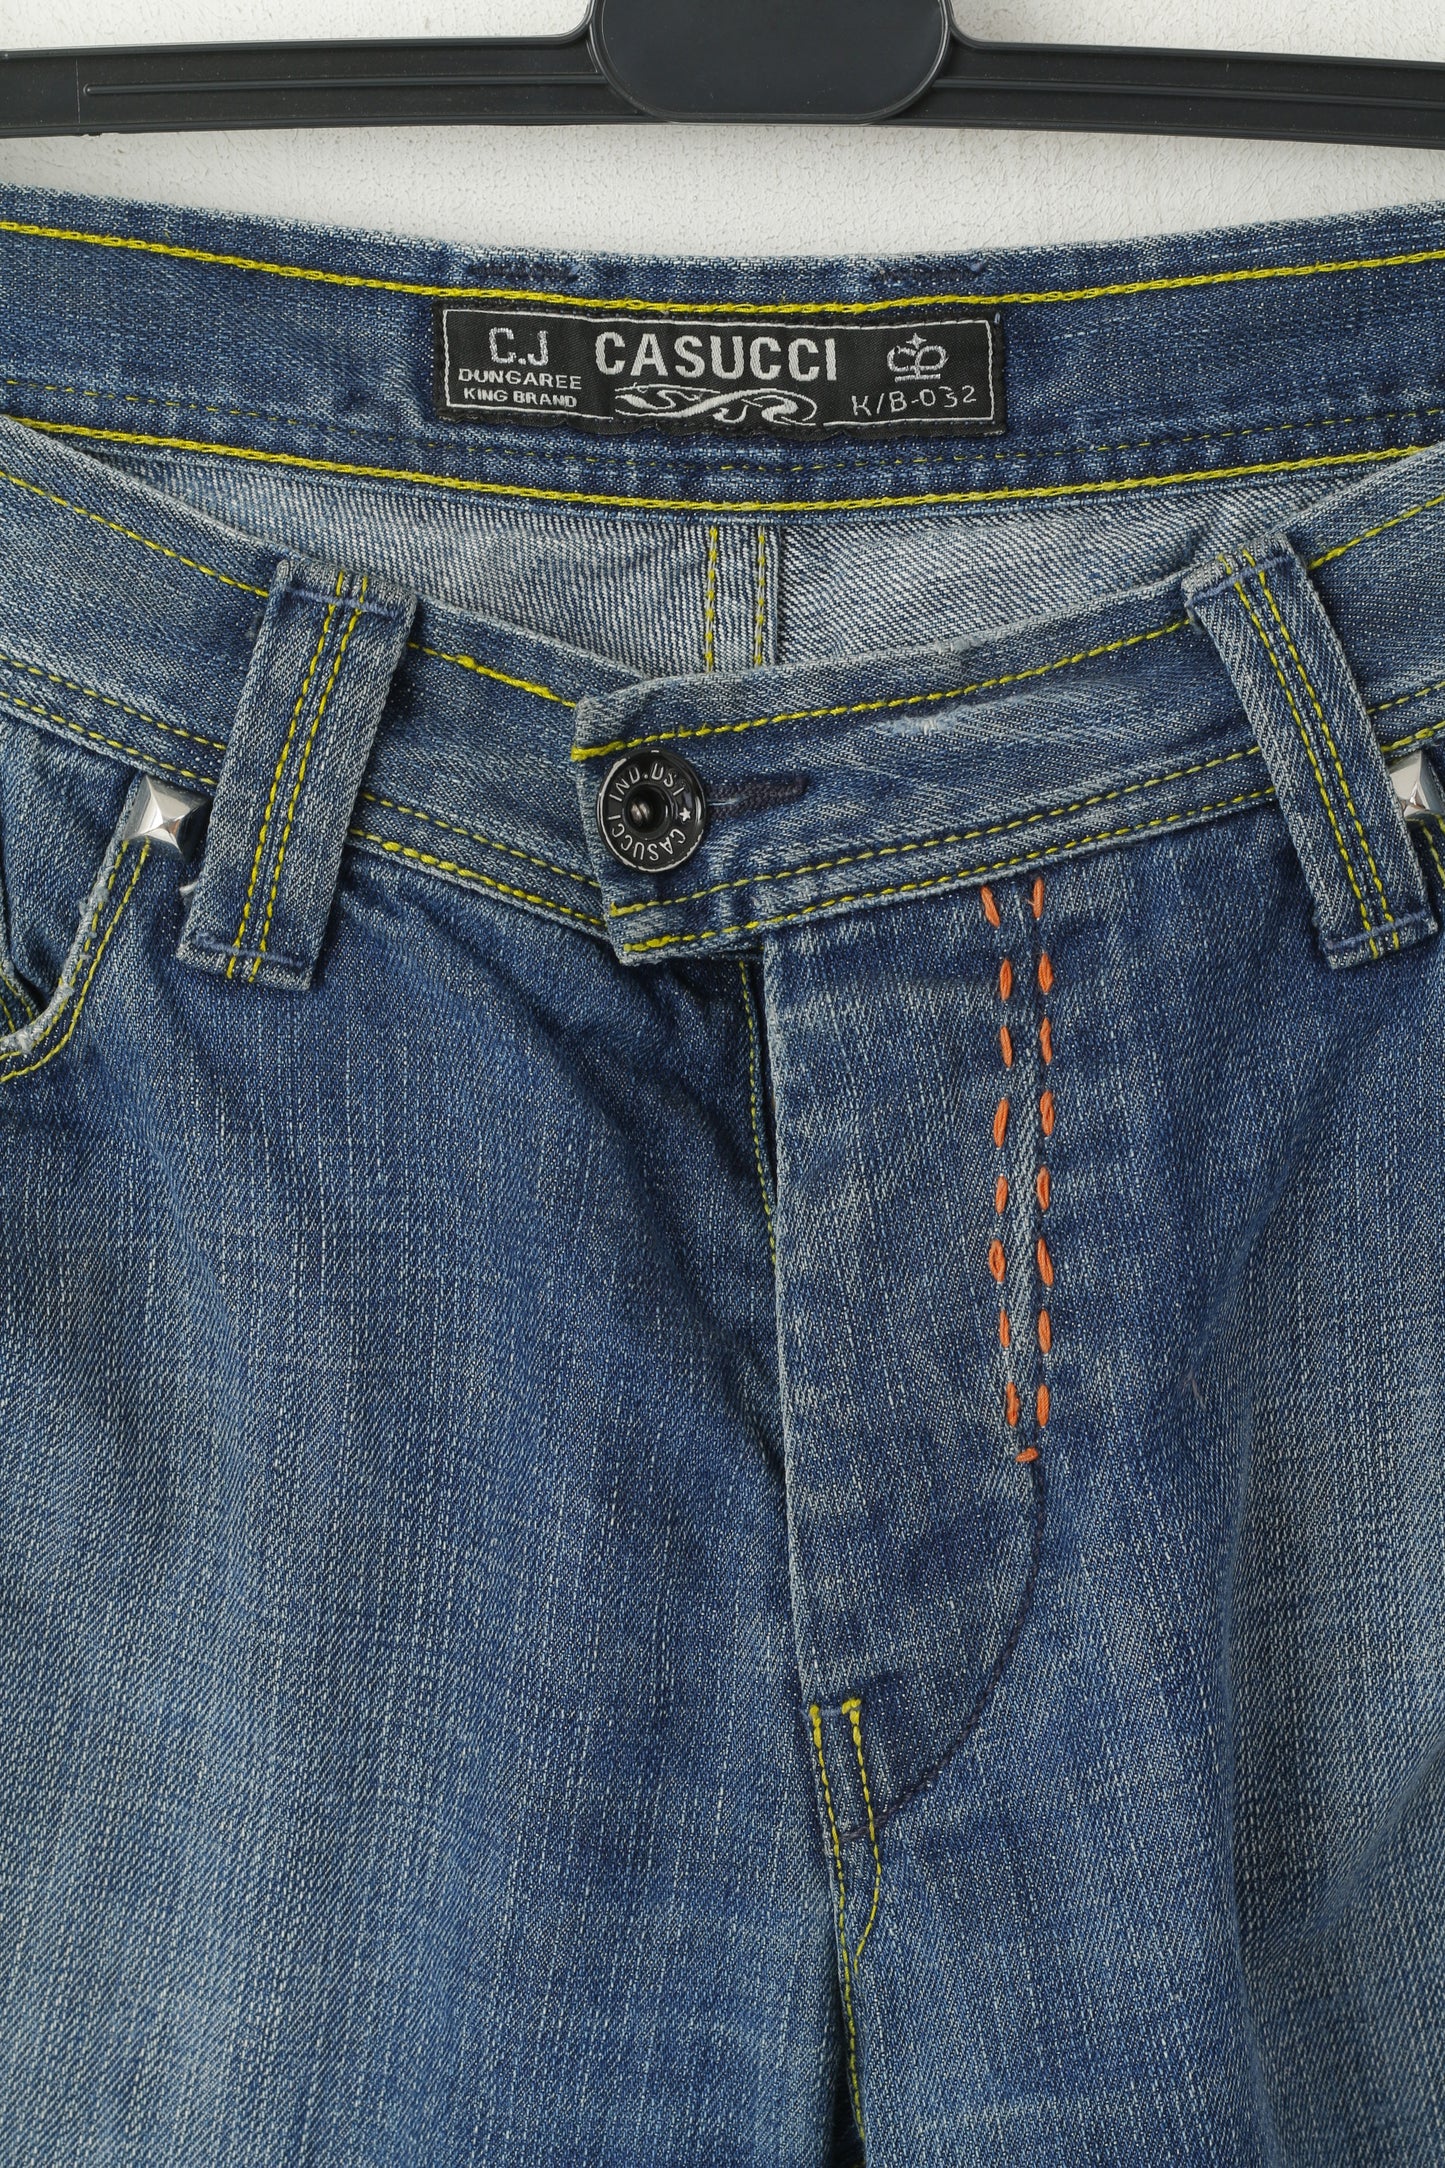 Casucci King Jeans Men 36 50 Jeans Trousers Navy Cotton Denim Straight Leg Pants